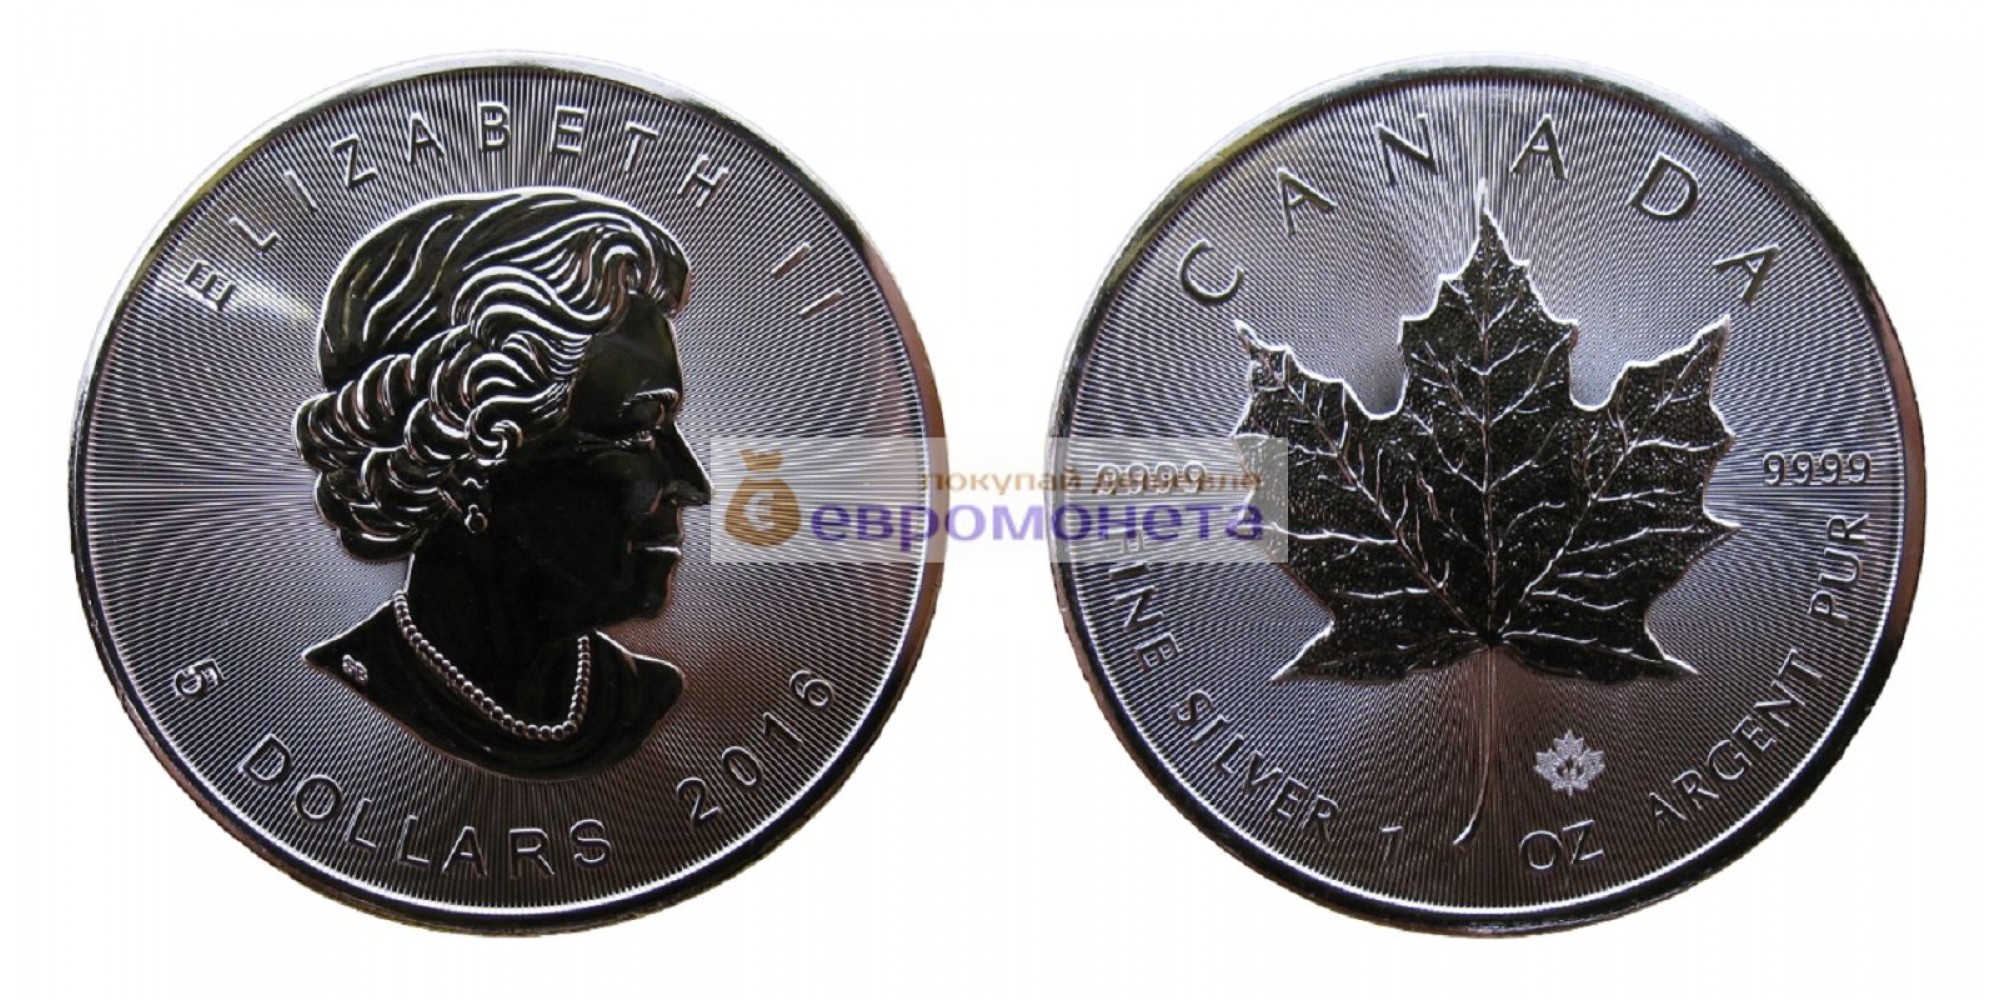 Канада 5 долларов 2016 год Кленовый лист (маленький лист под большим). Серебро унция 999 пробы